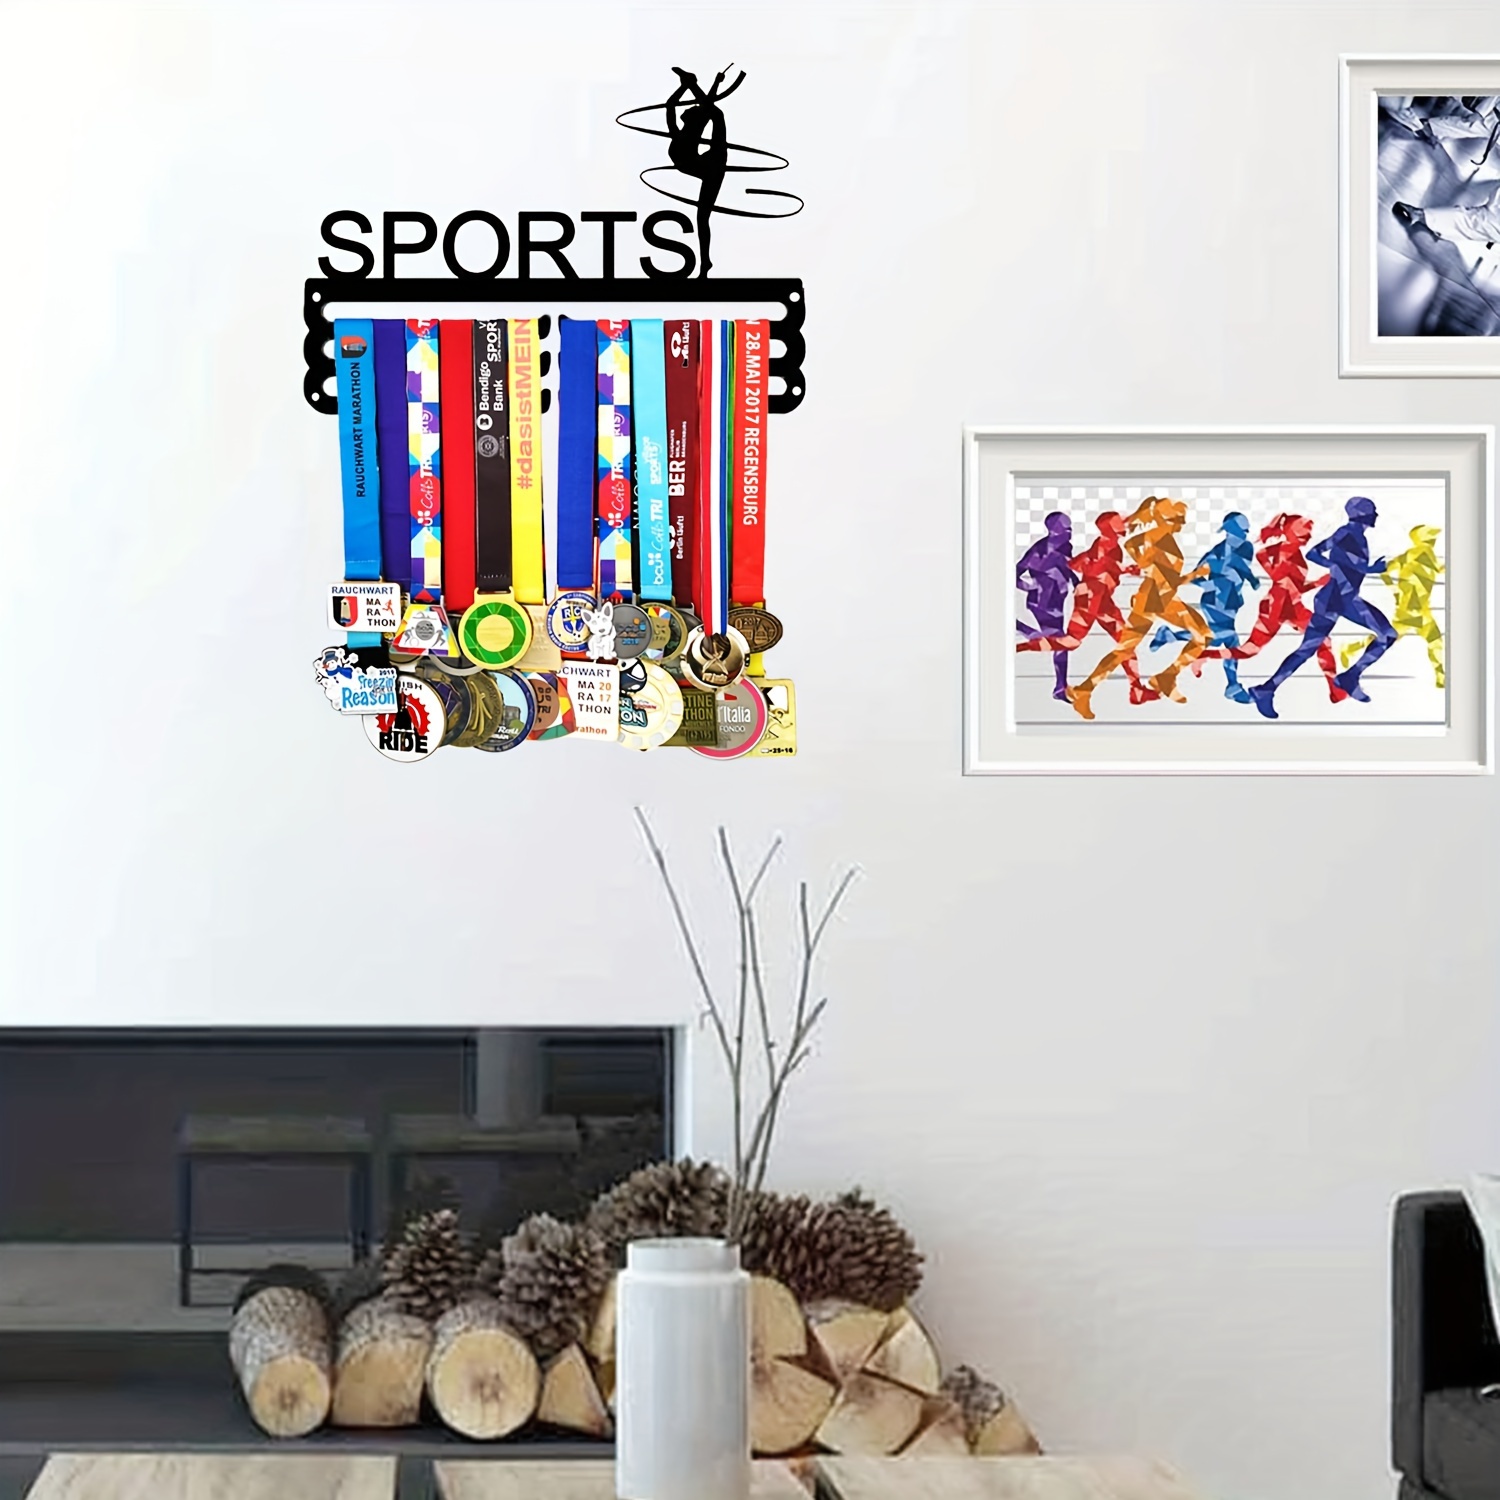 Porte-médaille Aqdehors, cintre d'affichage, cadre T1, lanière en métal  pour remise de prix sportifs